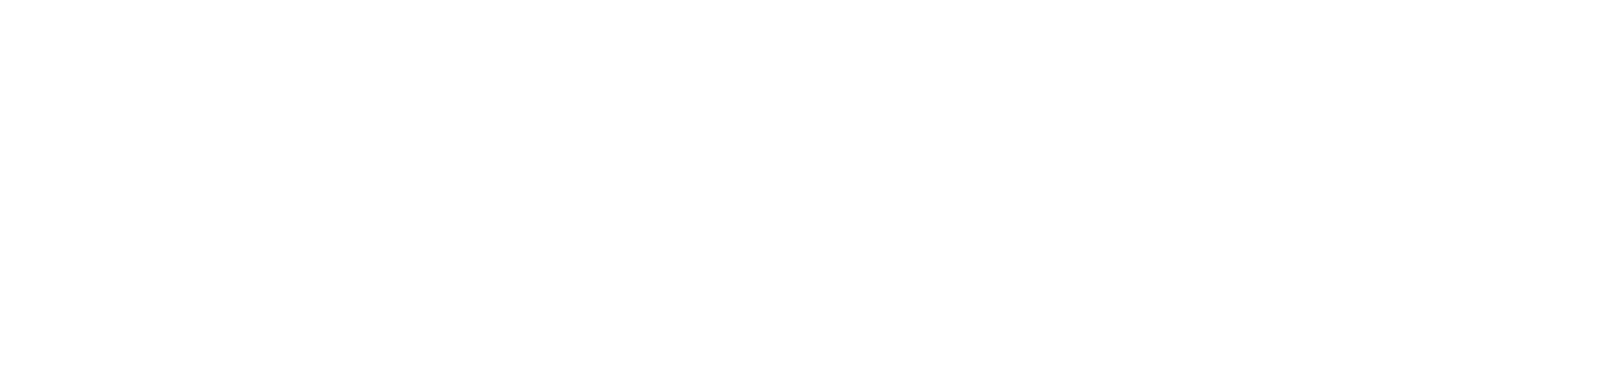 Logotipo de la Universidad Excelsior en negro